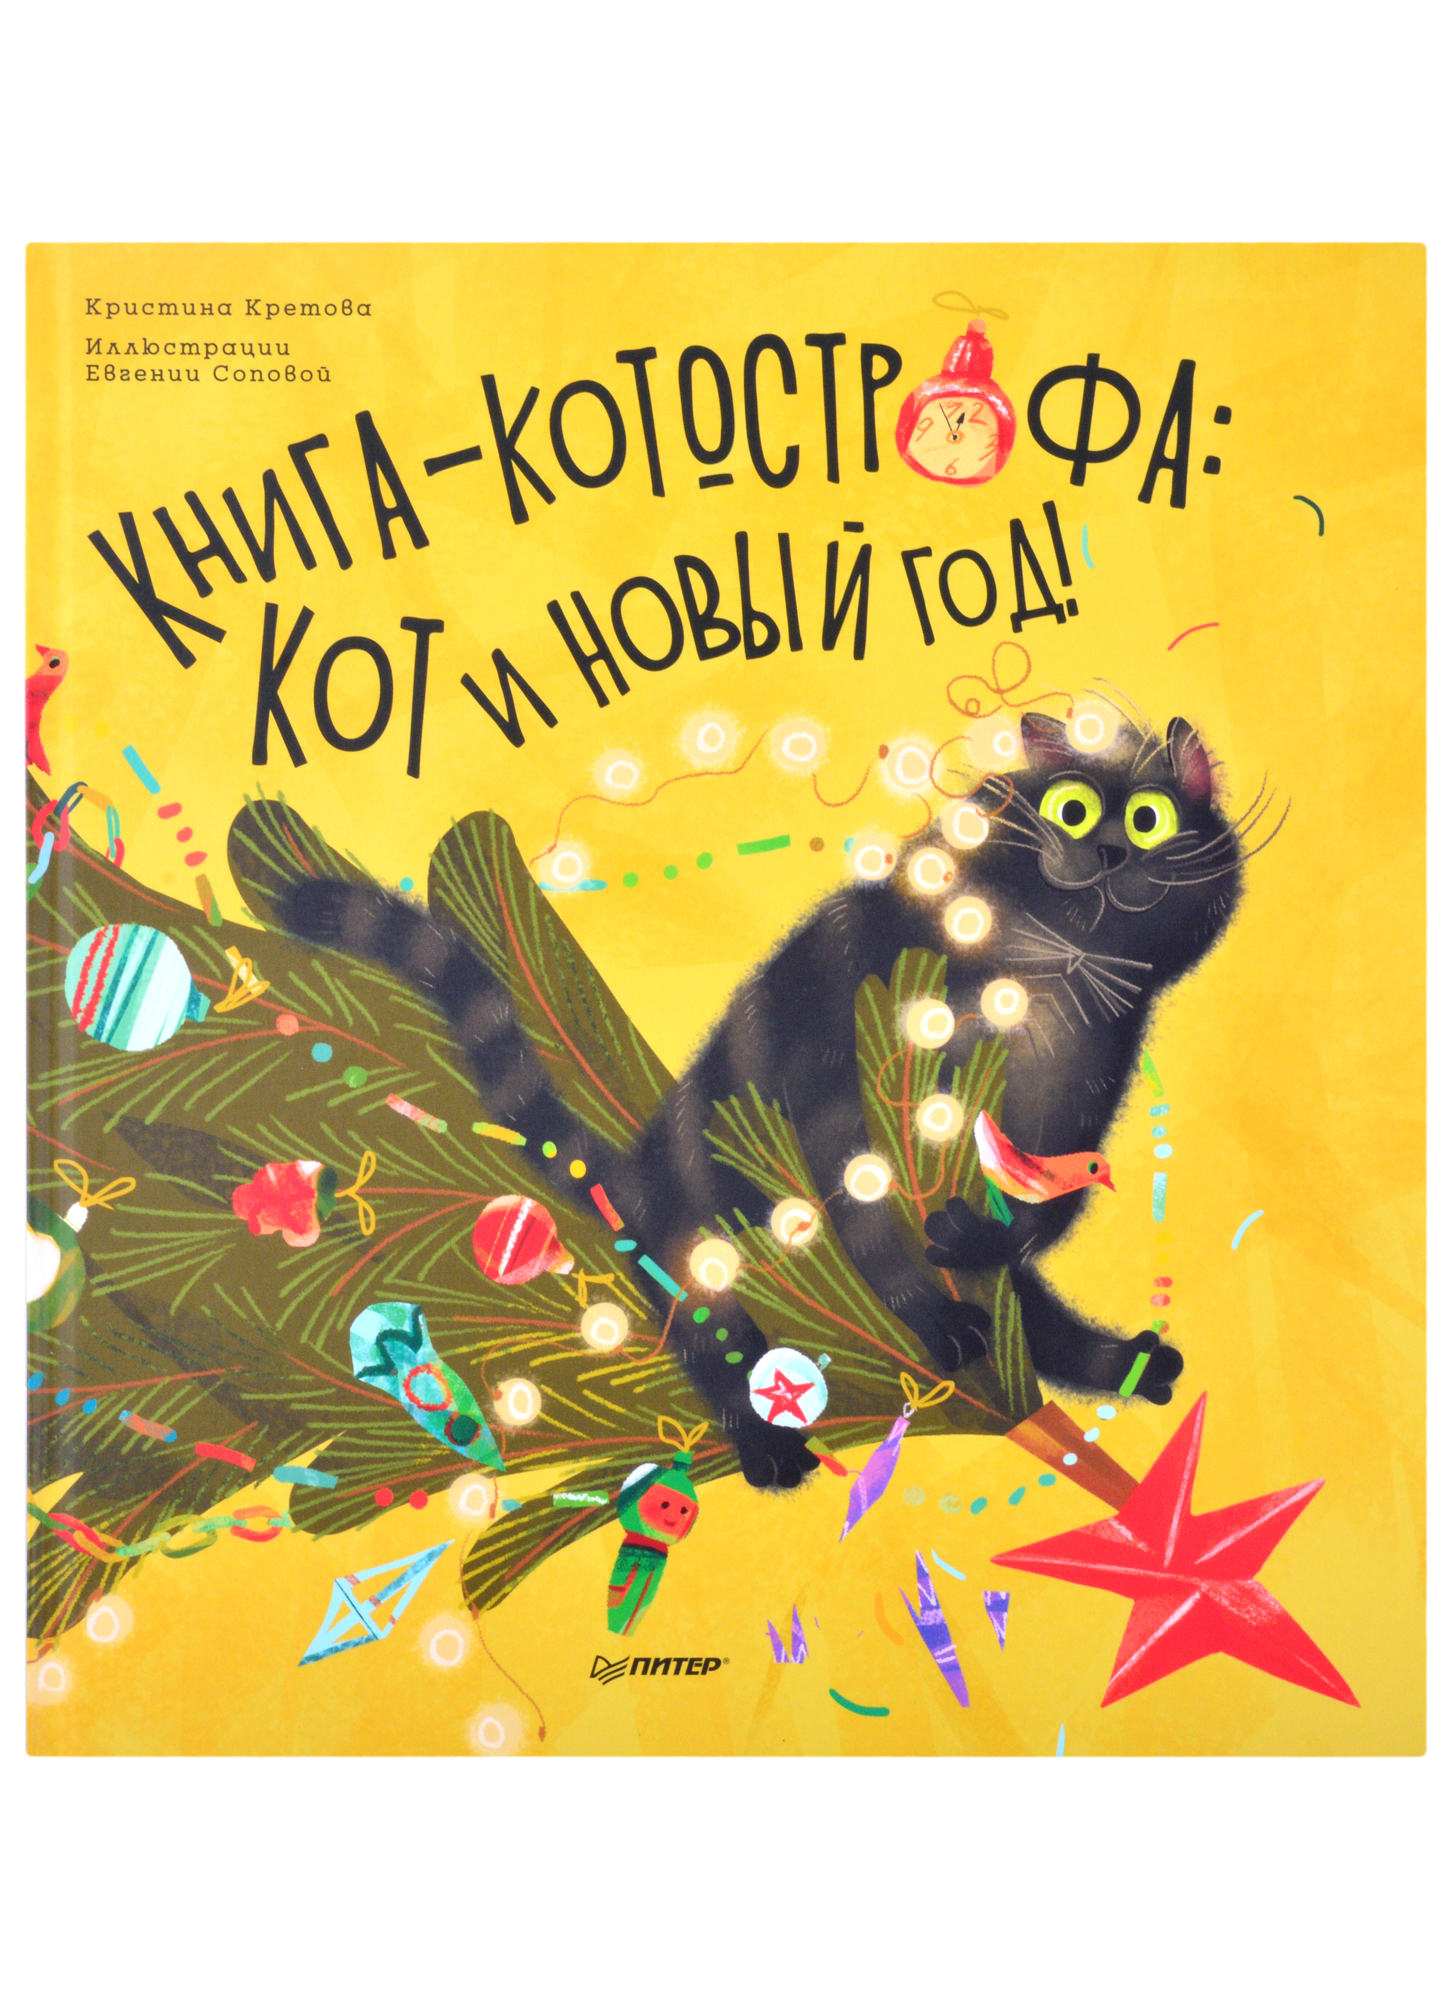 Кретова Кристина Александровна Книга-котострофа: Кот и Новый год! Полезные сказки